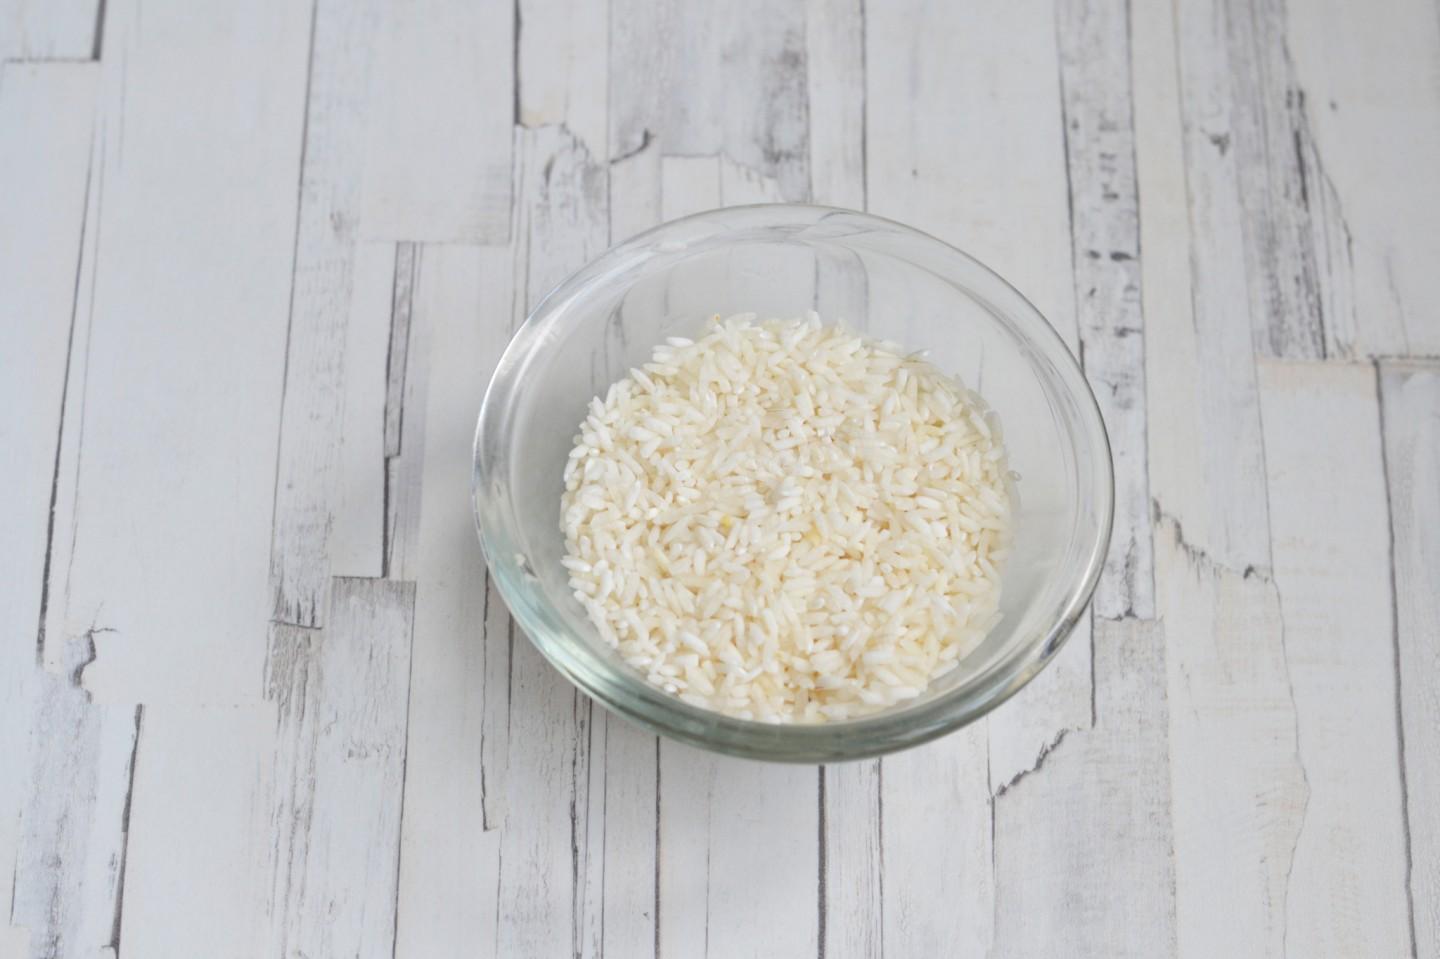 Пропаренный рис нужно промывать. Суп с длиннозерным рисом. Рис степь круглозерный. Рис круглозерный отварной в миске. Пропаренный рис промывают.